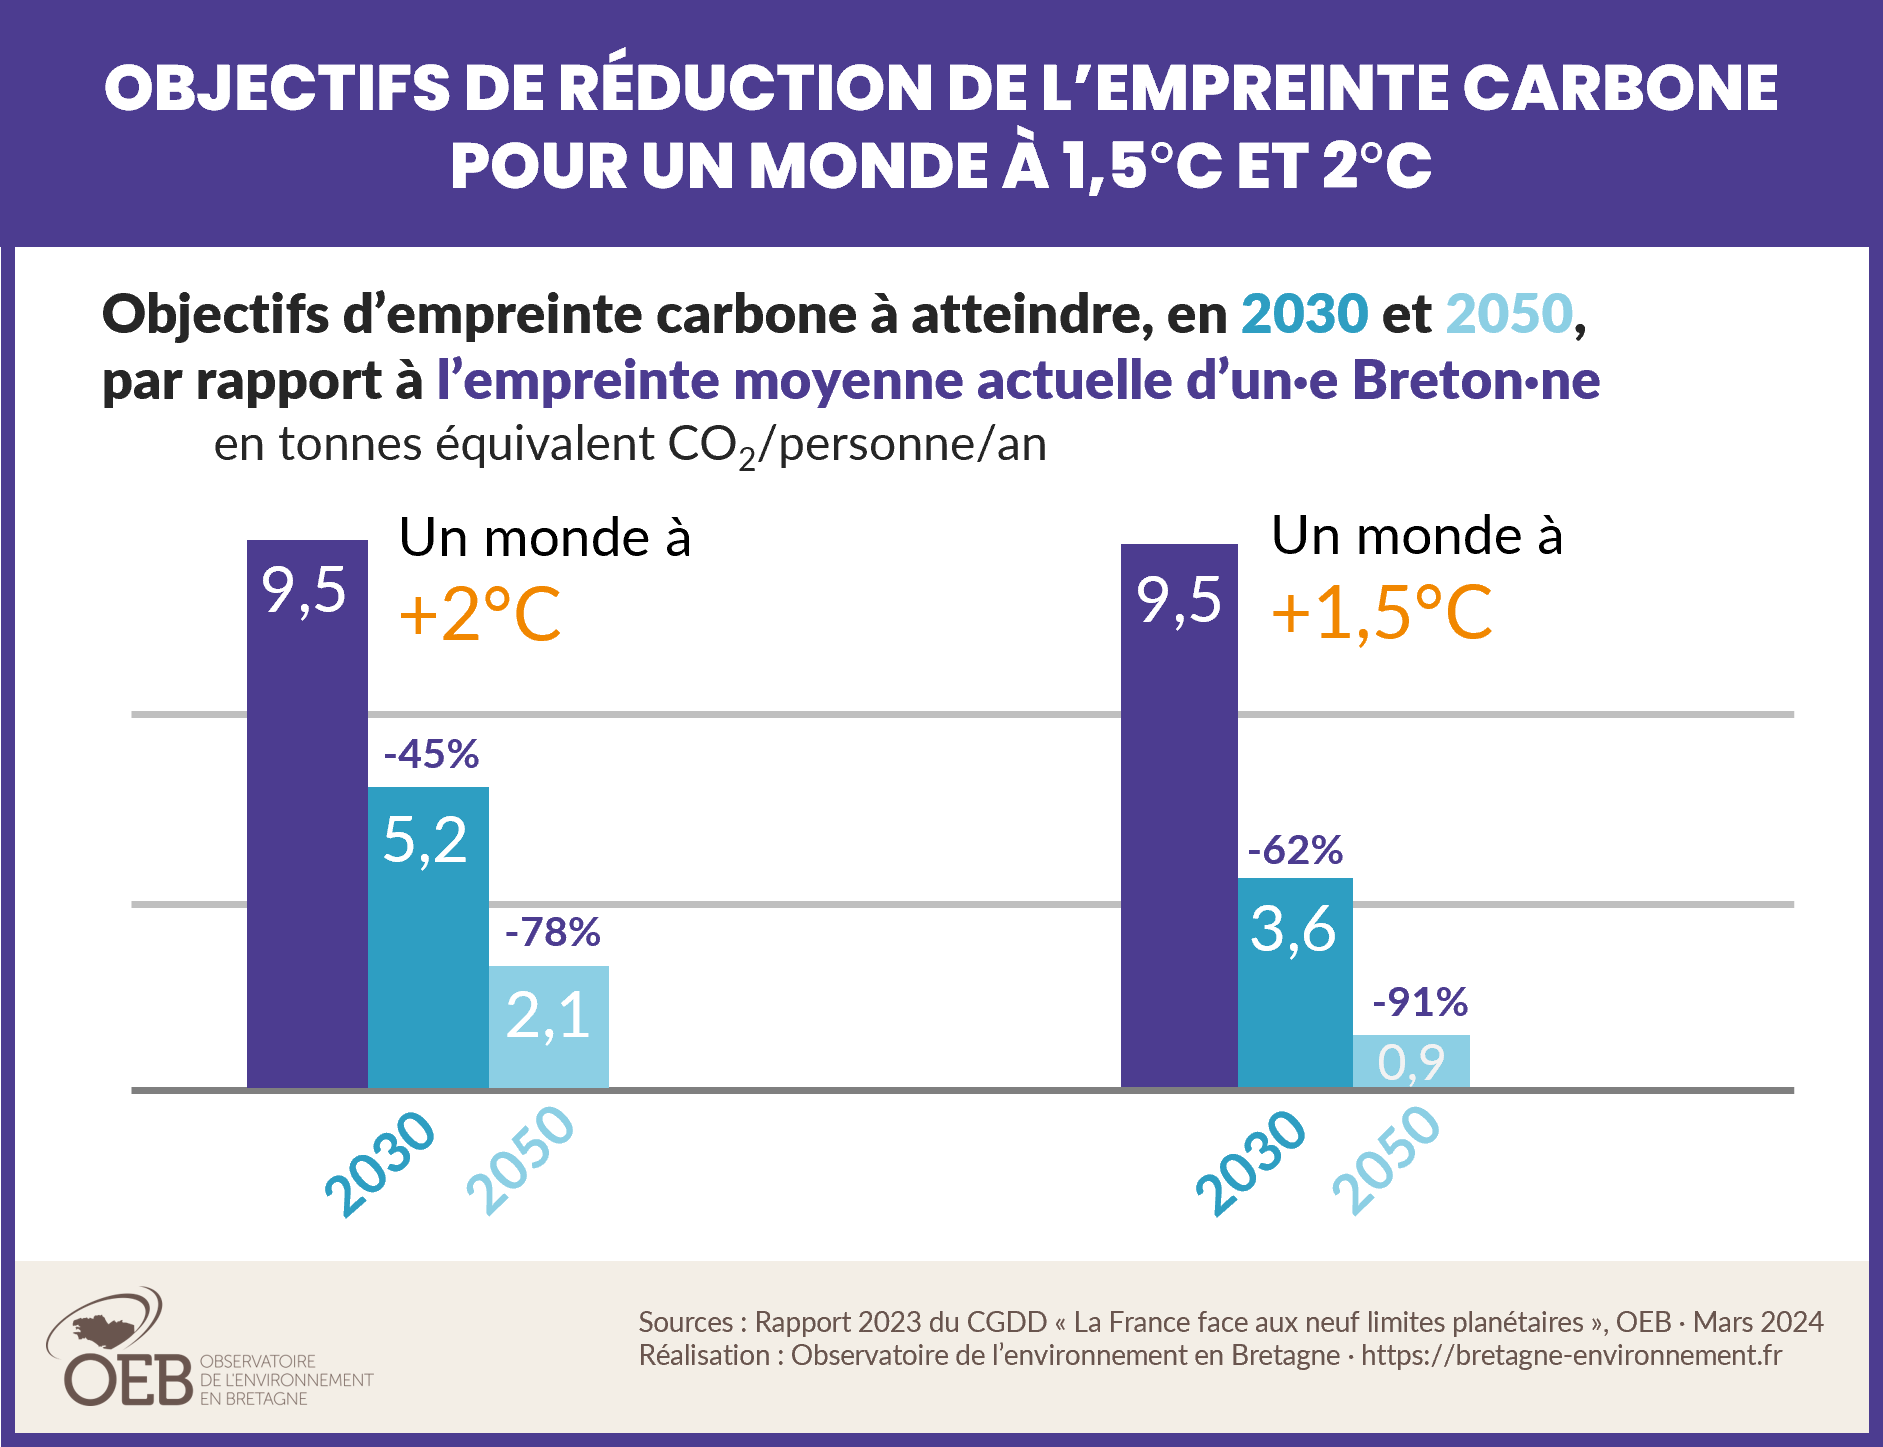 Diminution de l'empreinte carbone d'une Bretonne pour un monde à +1,5°C et +2°C 